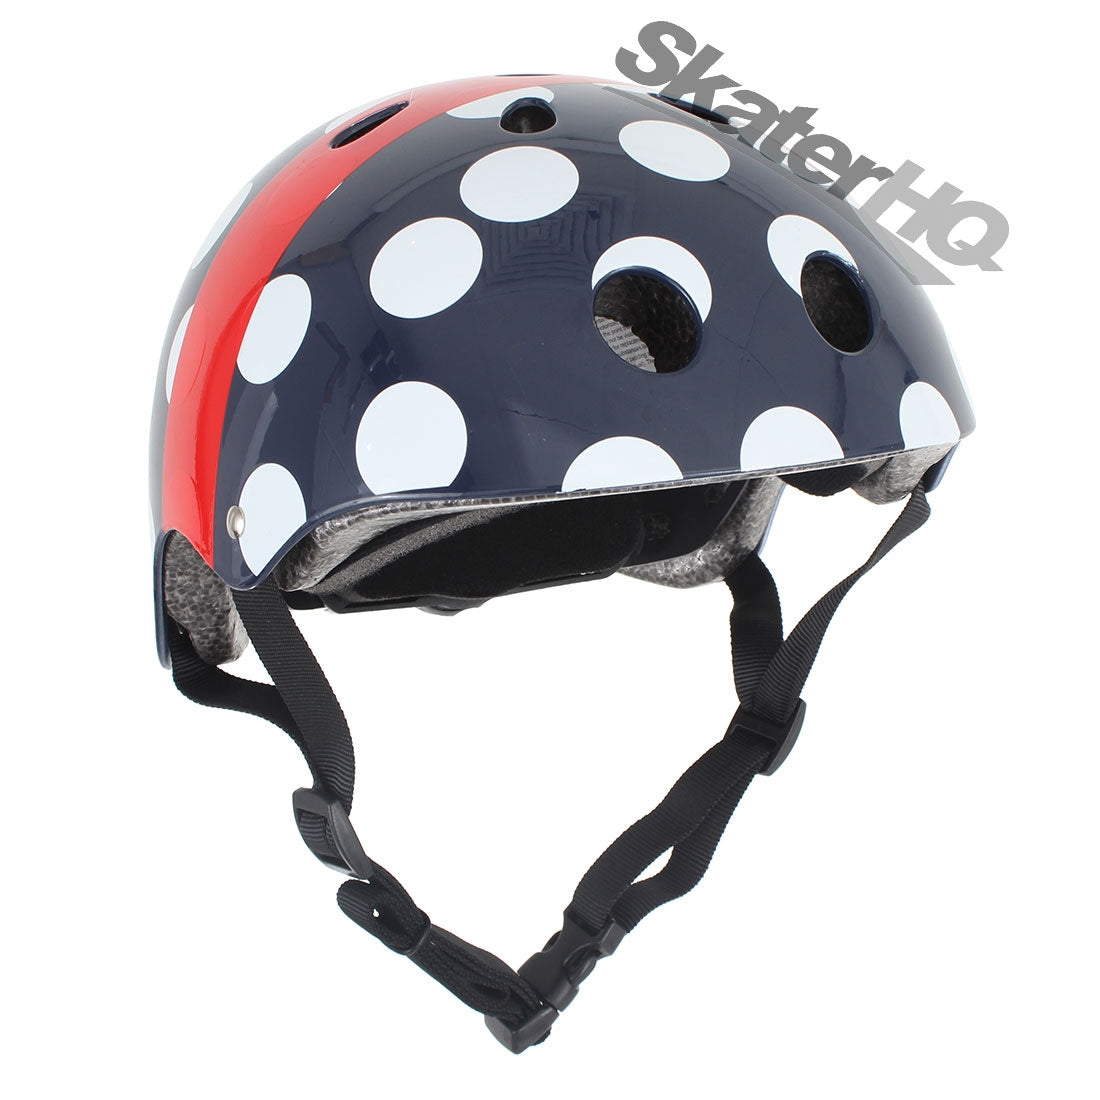 Hornit Lids Polka Dots Helmet - Medium Helmets